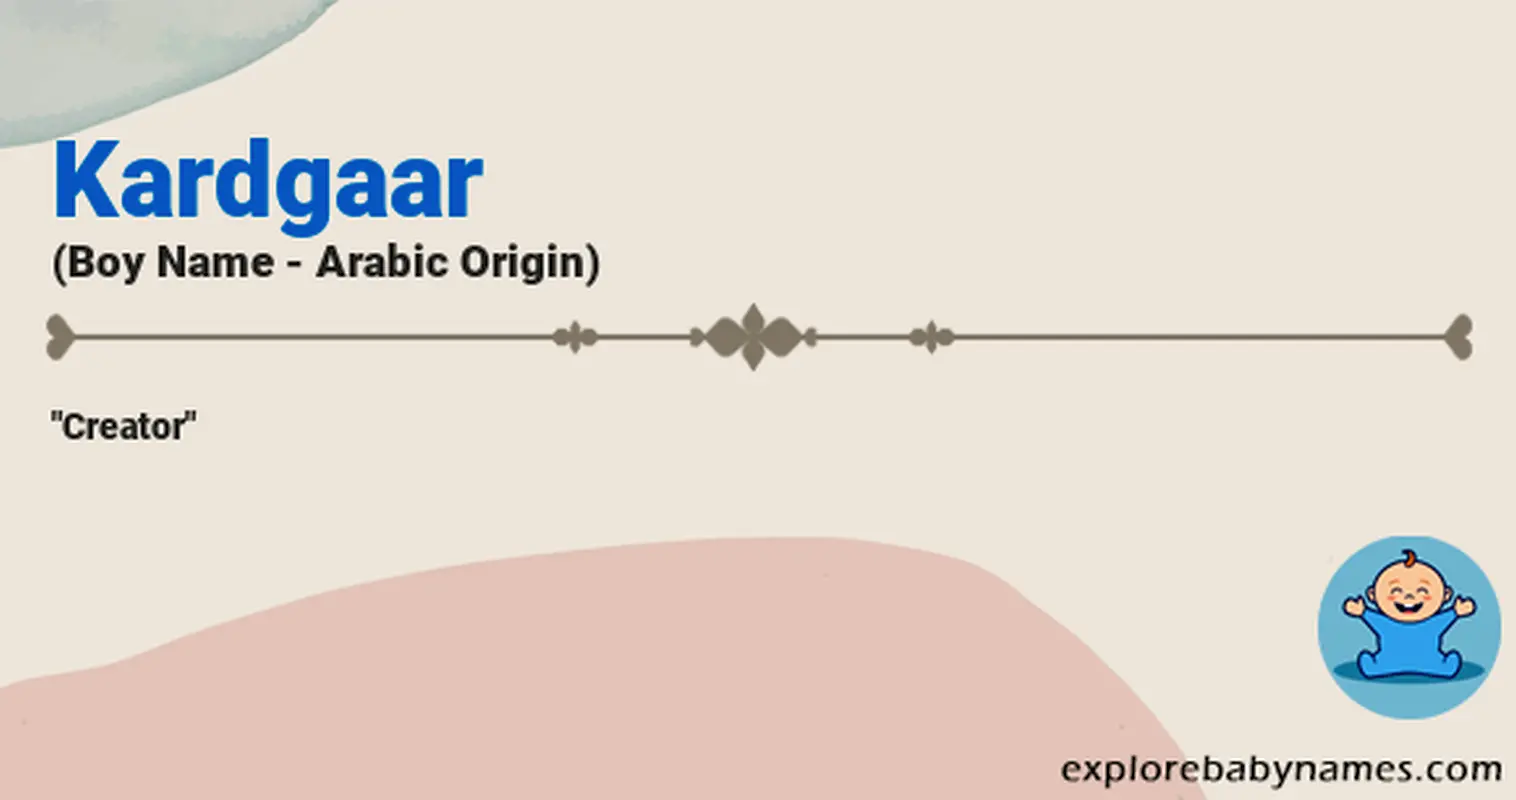 Meaning of Kardgaar